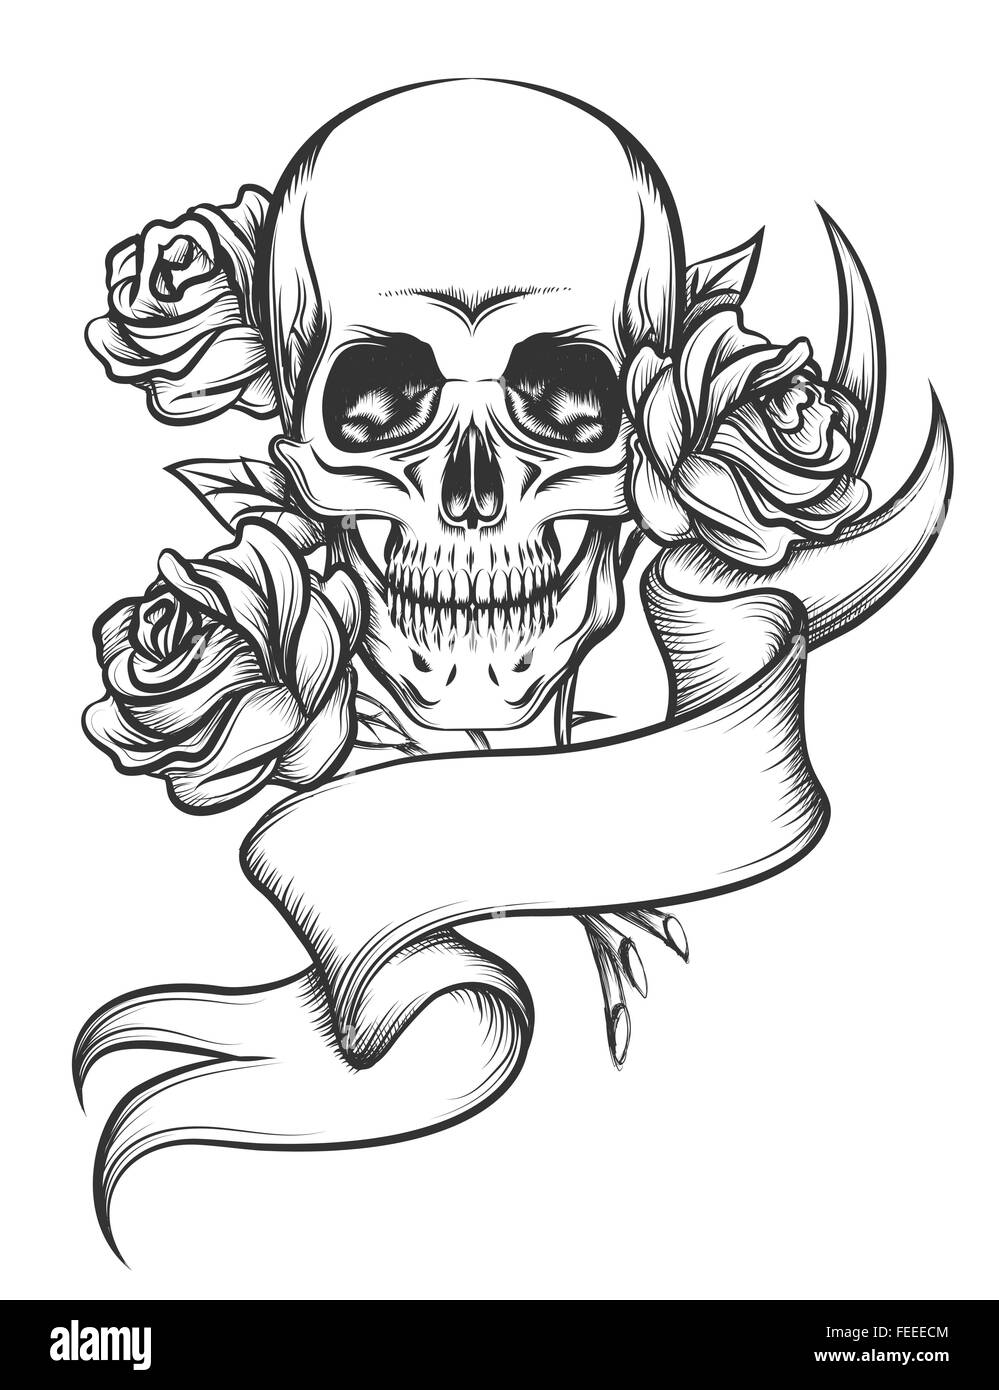 Cranio umano con rose e blanc nastro. Illustrazione in stile tatuaggio isolati su sfondo bianco Illustrazione Vettoriale